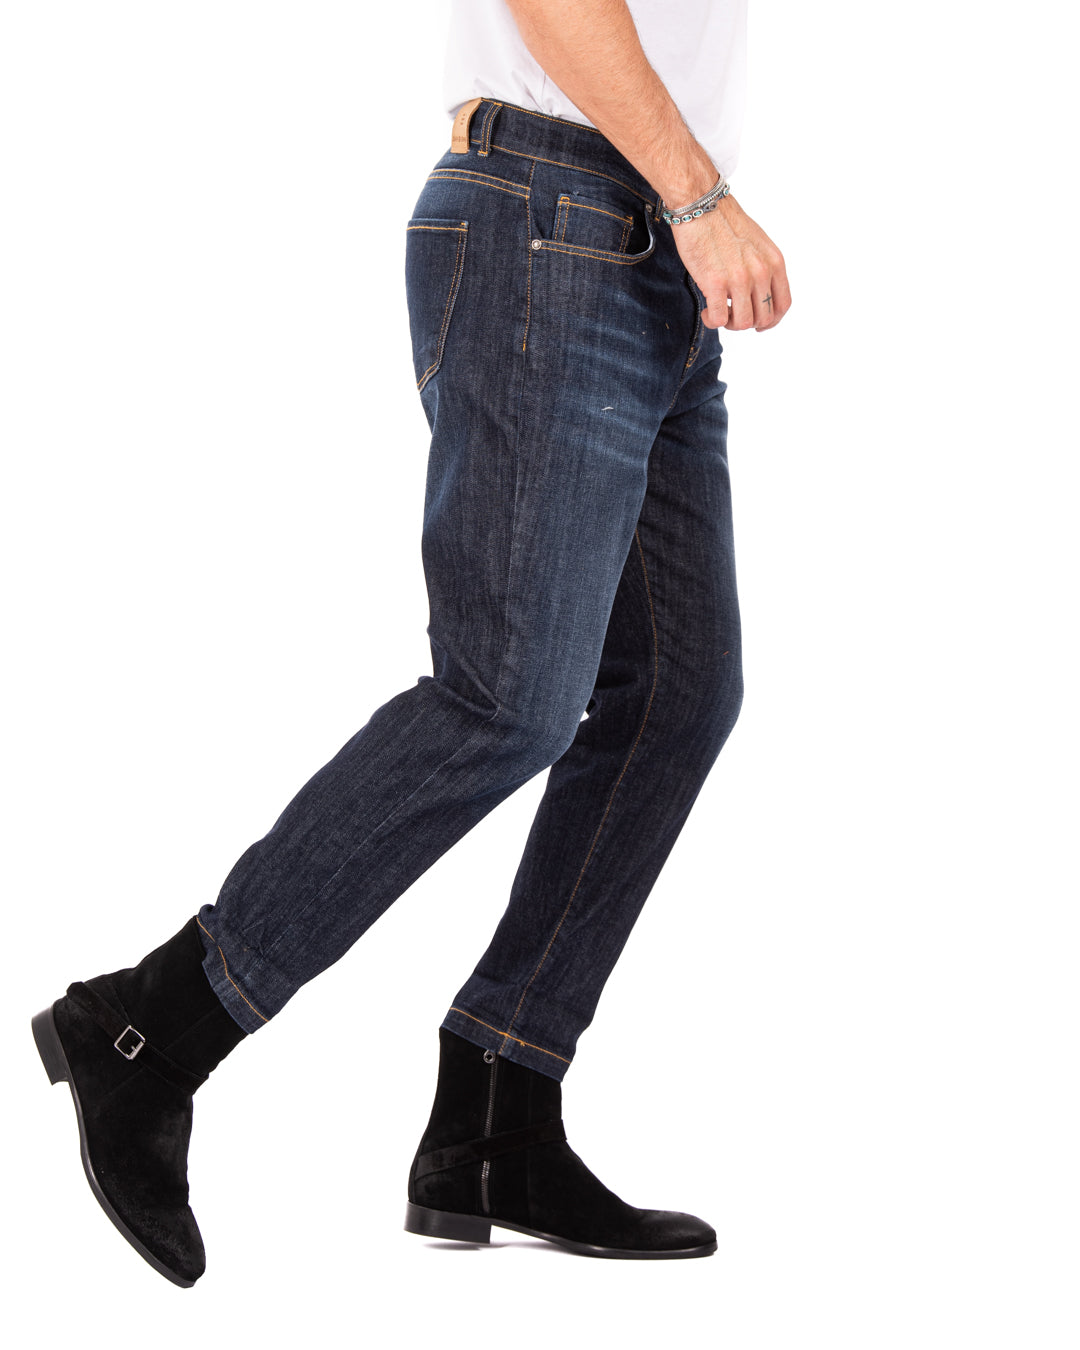 Main - jeans classico skinny lavaggio scuro